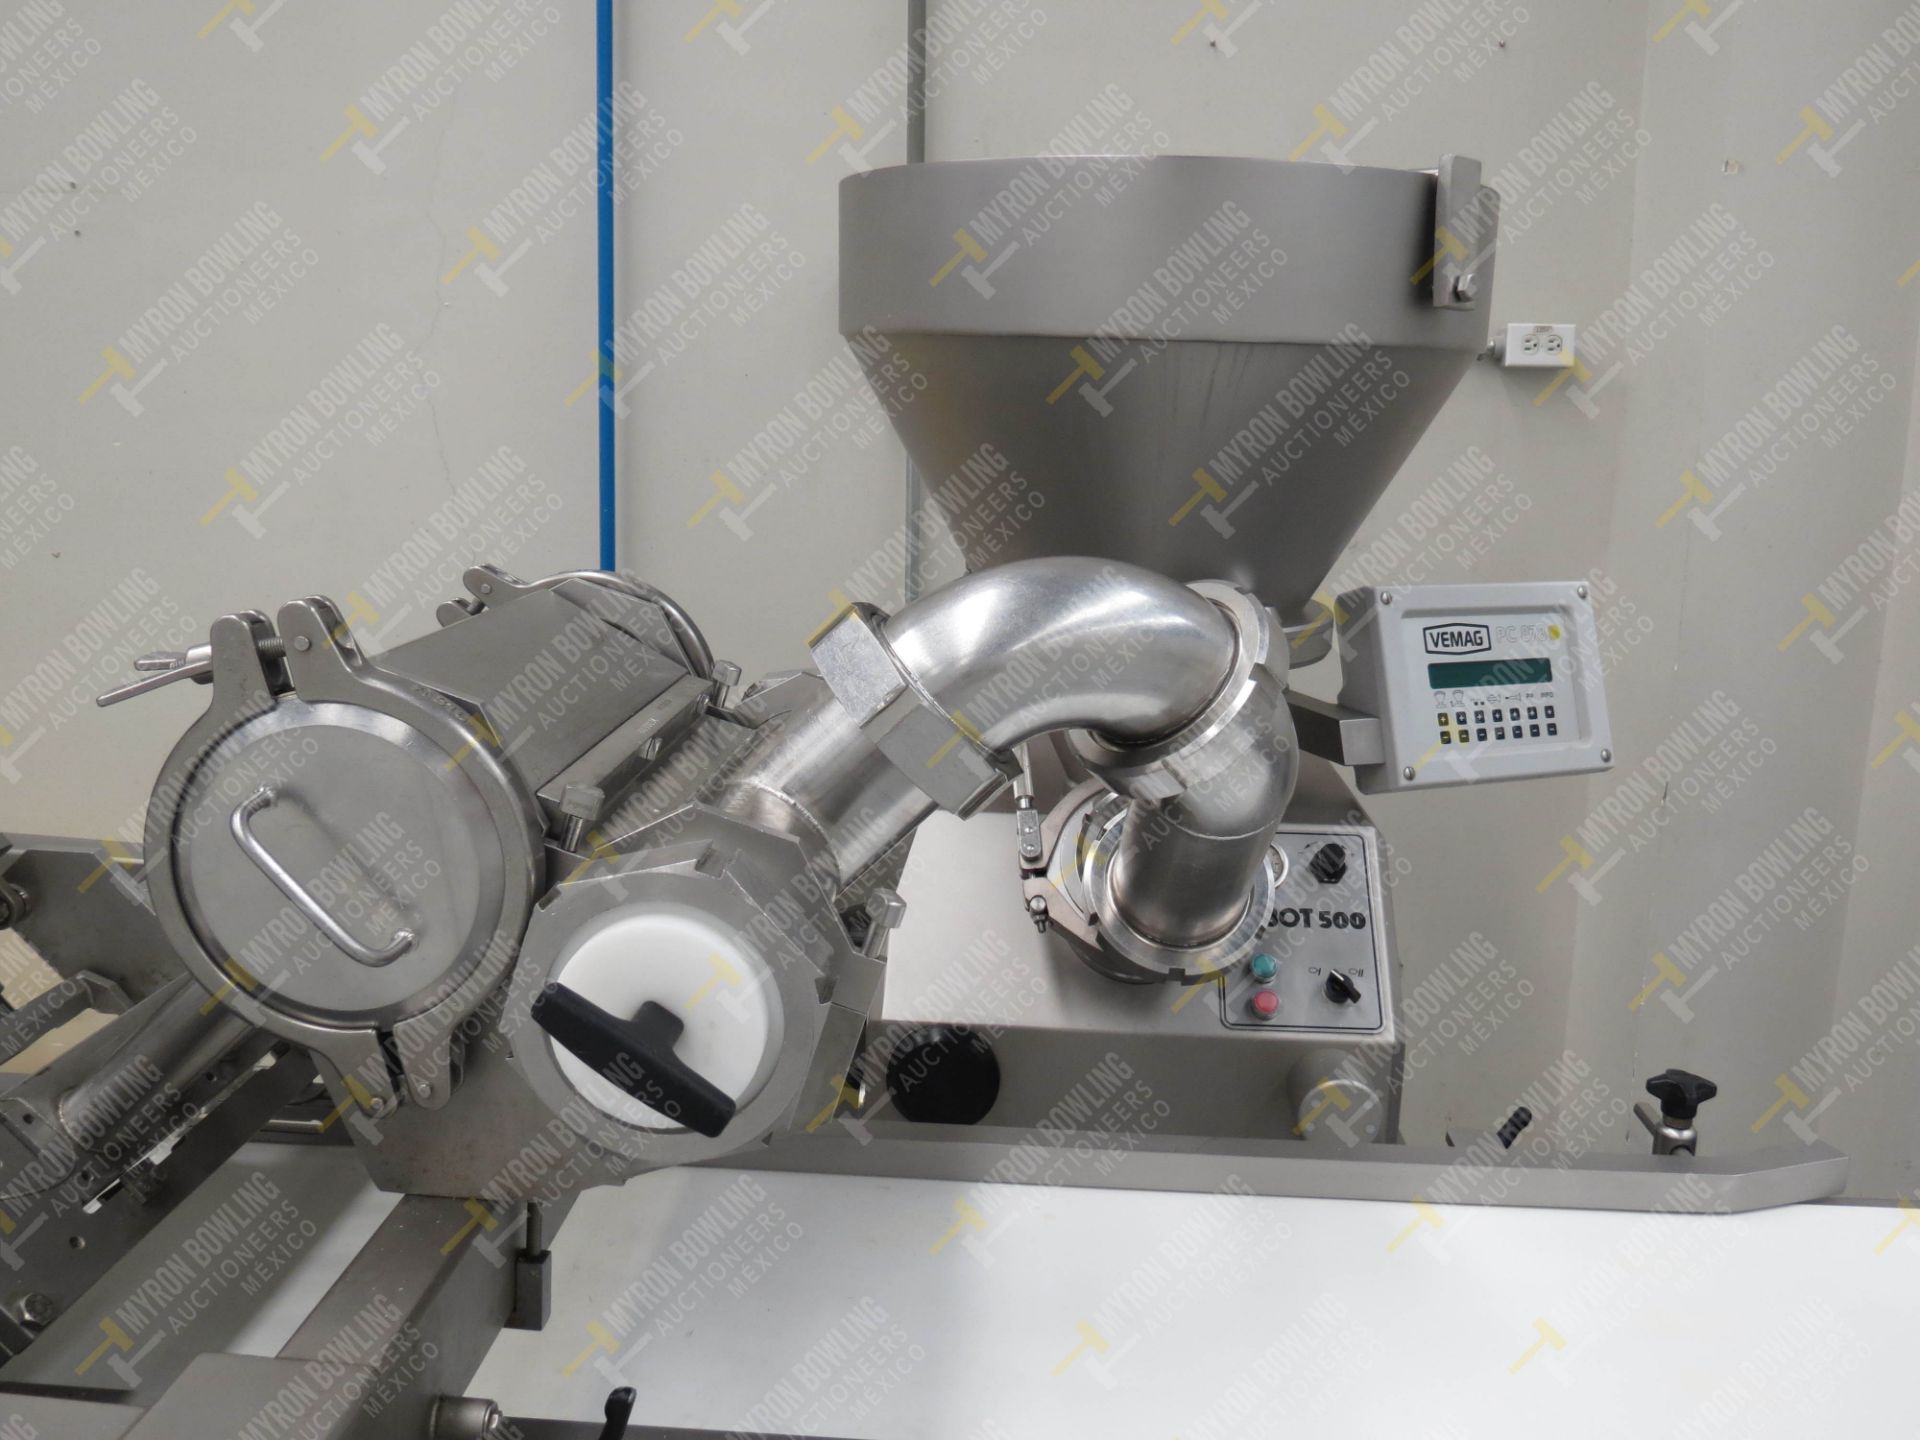 Dosificador neumático marca Vemag, Modelo Robot 500, No. de Serie 1284993, año 2016 con … - Image 5 of 11